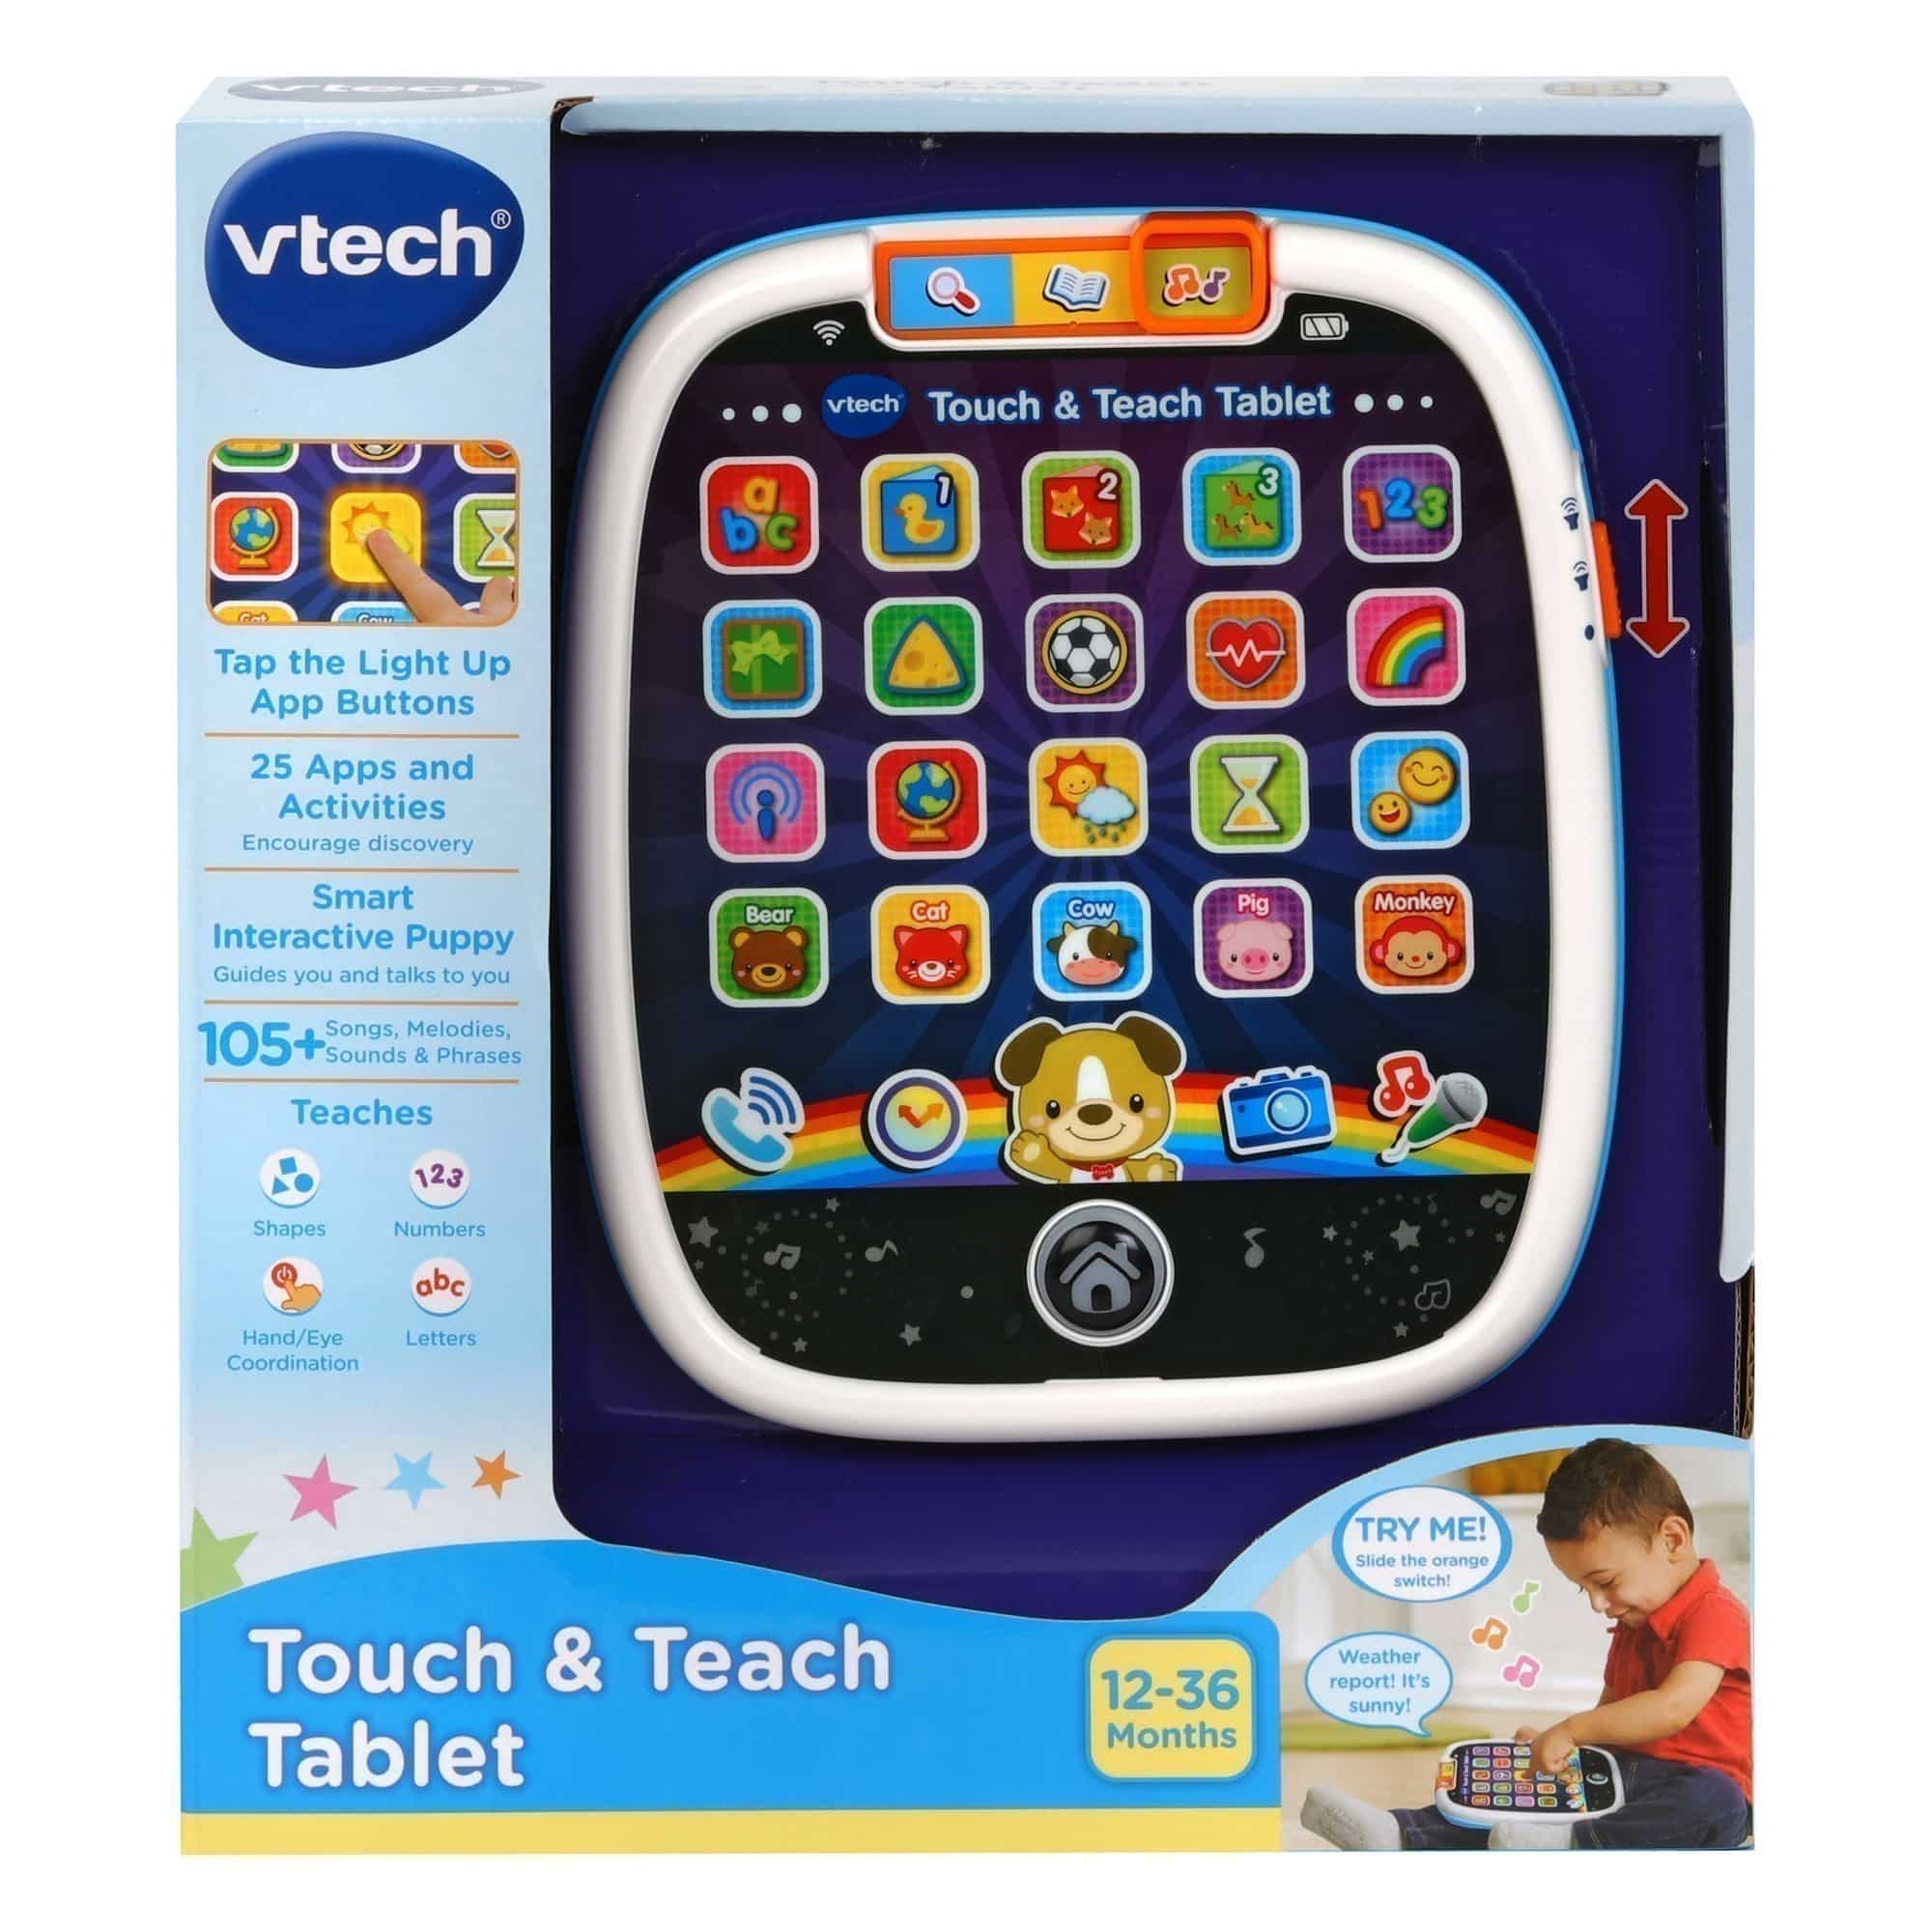 Vtech - Touch & Teach Tablet